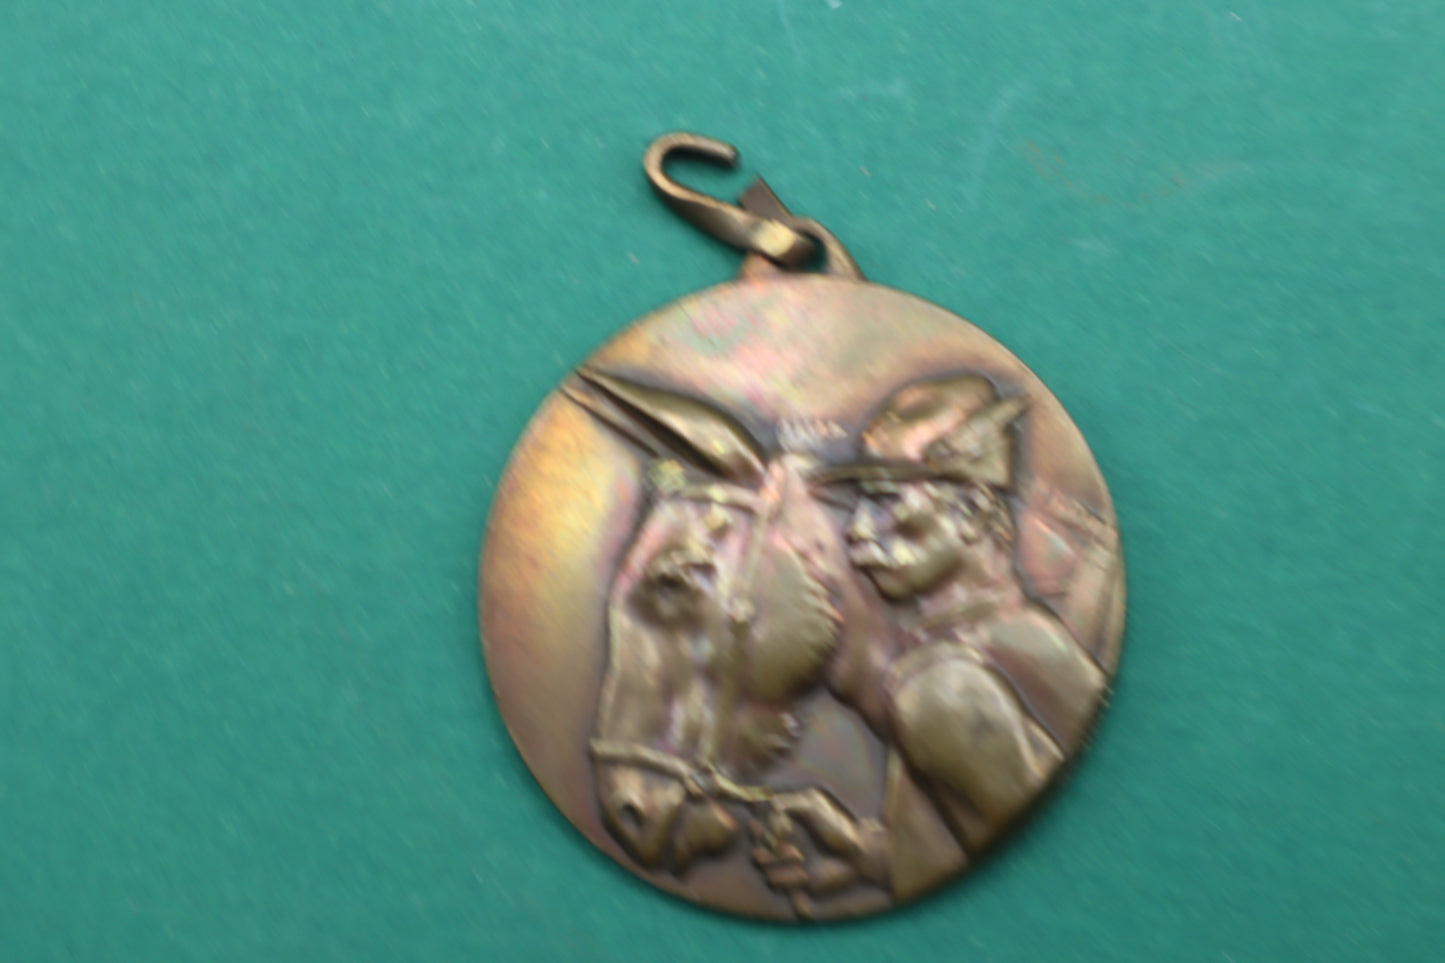 Medaglia adunata nazionale alpini a Roma 1934 senza nastrino